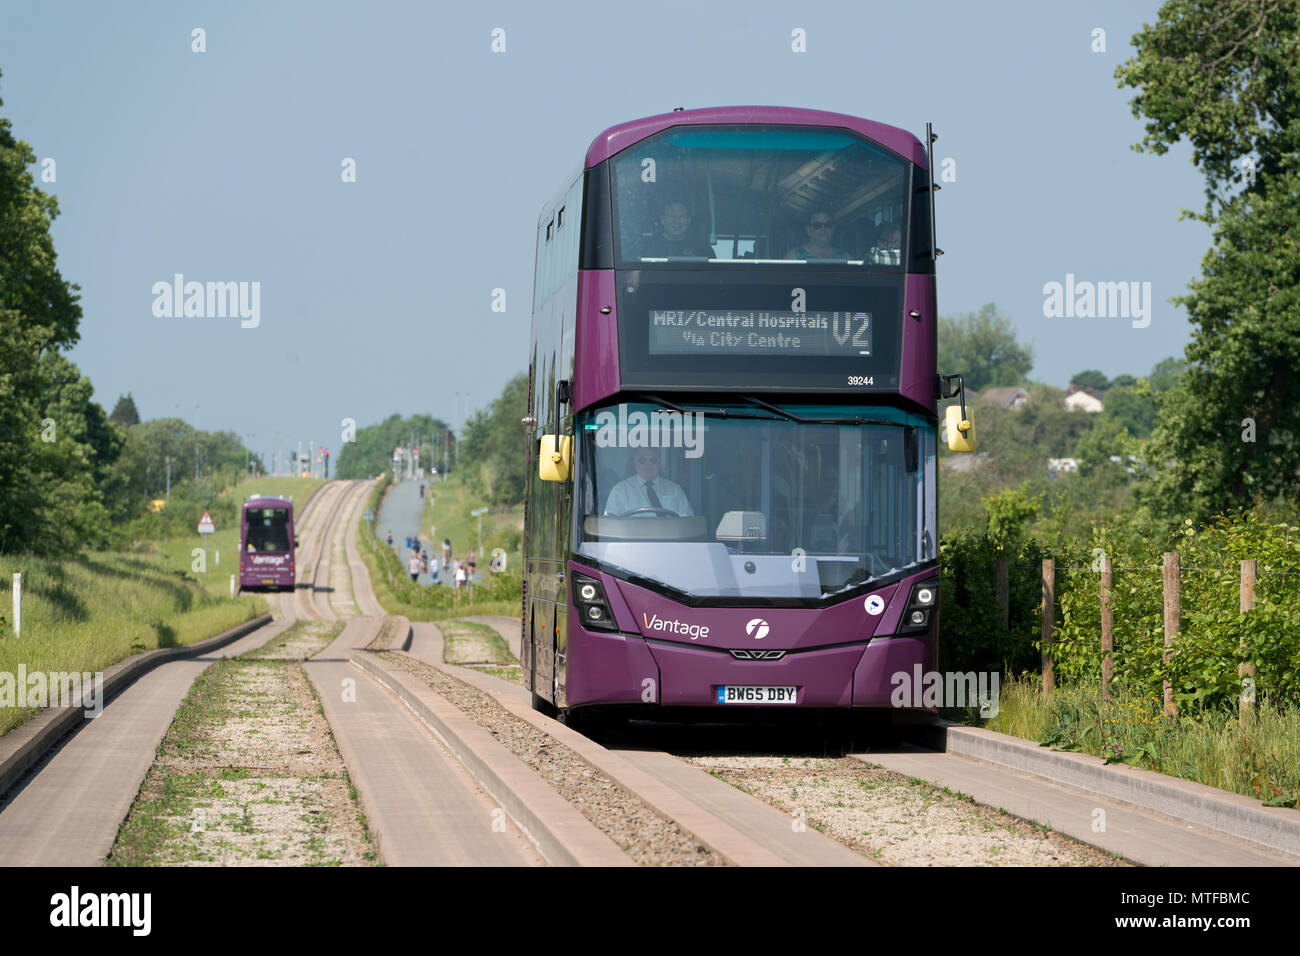 Un premier bus Vantage voyageant au Busway guidé Leigh dans Mosley commun, Wigan, Greater Manchester. Banque D'Images